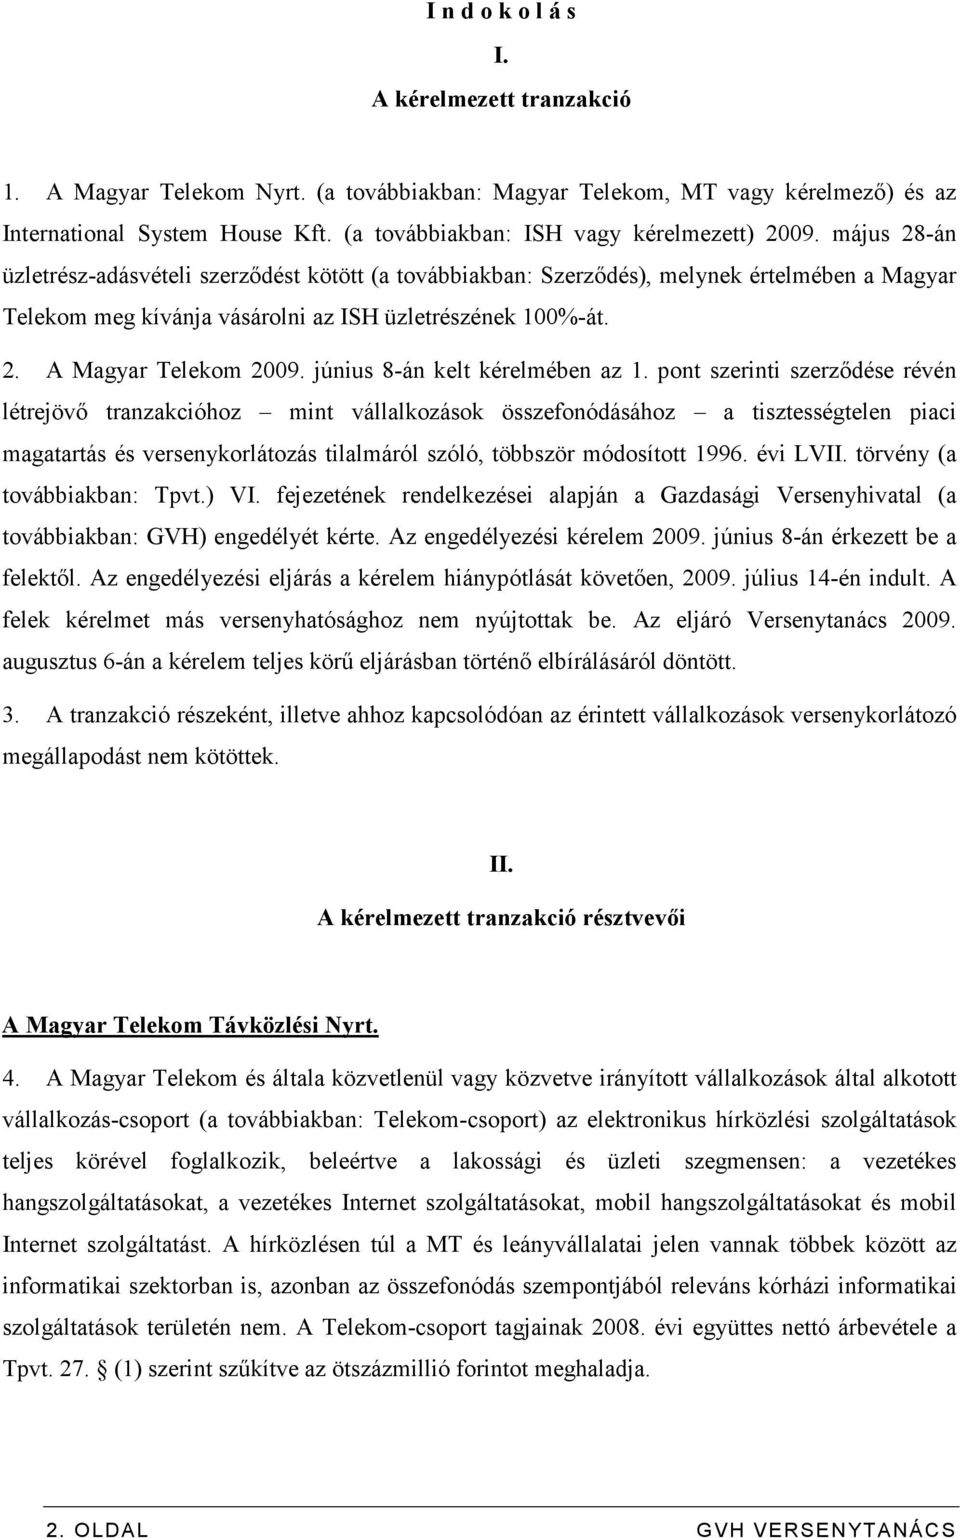 május 28-án üzletrész-adásvételi szerzıdést kötött (a továbbiakban: Szerzıdés), melynek értelmében a Magyar Telekom meg kívánja vásárolni az ISH üzletrészének 100%-át. 2. A Magyar Telekom 2009.